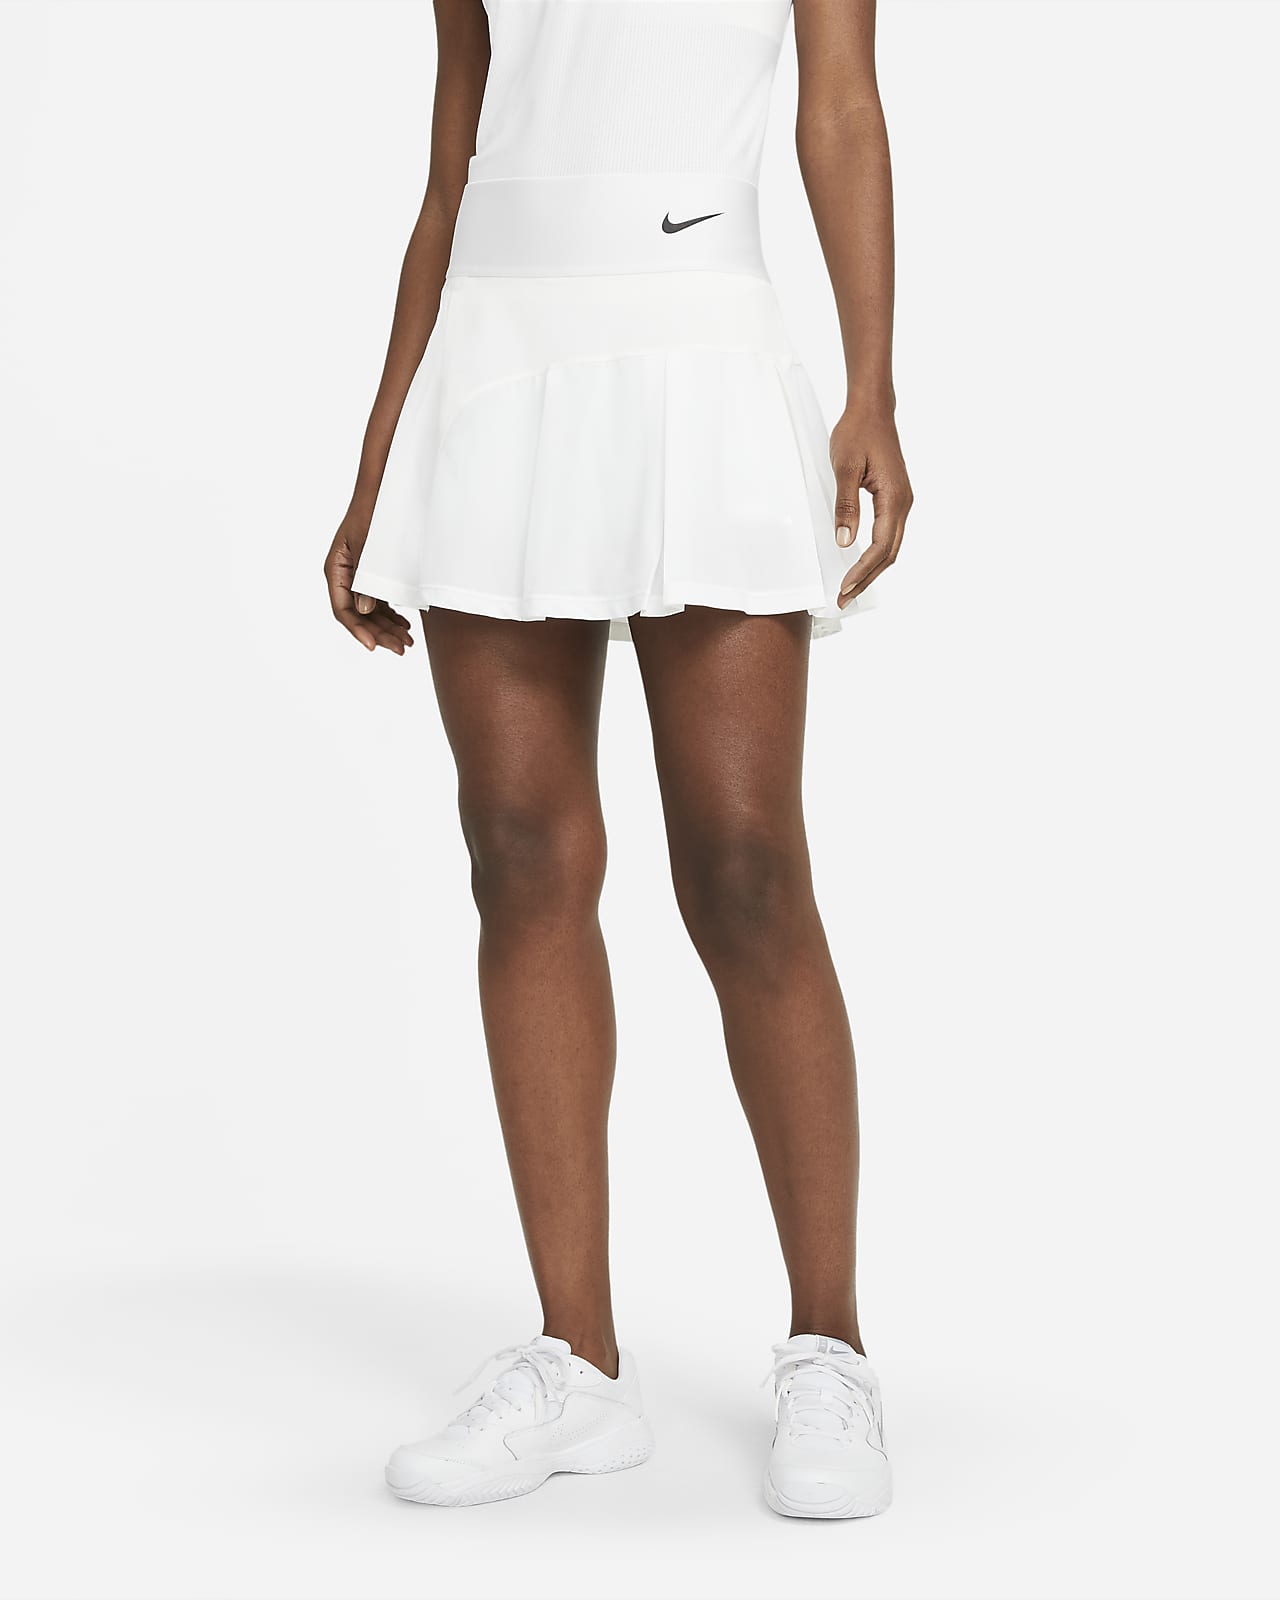 white tennis skirt buy